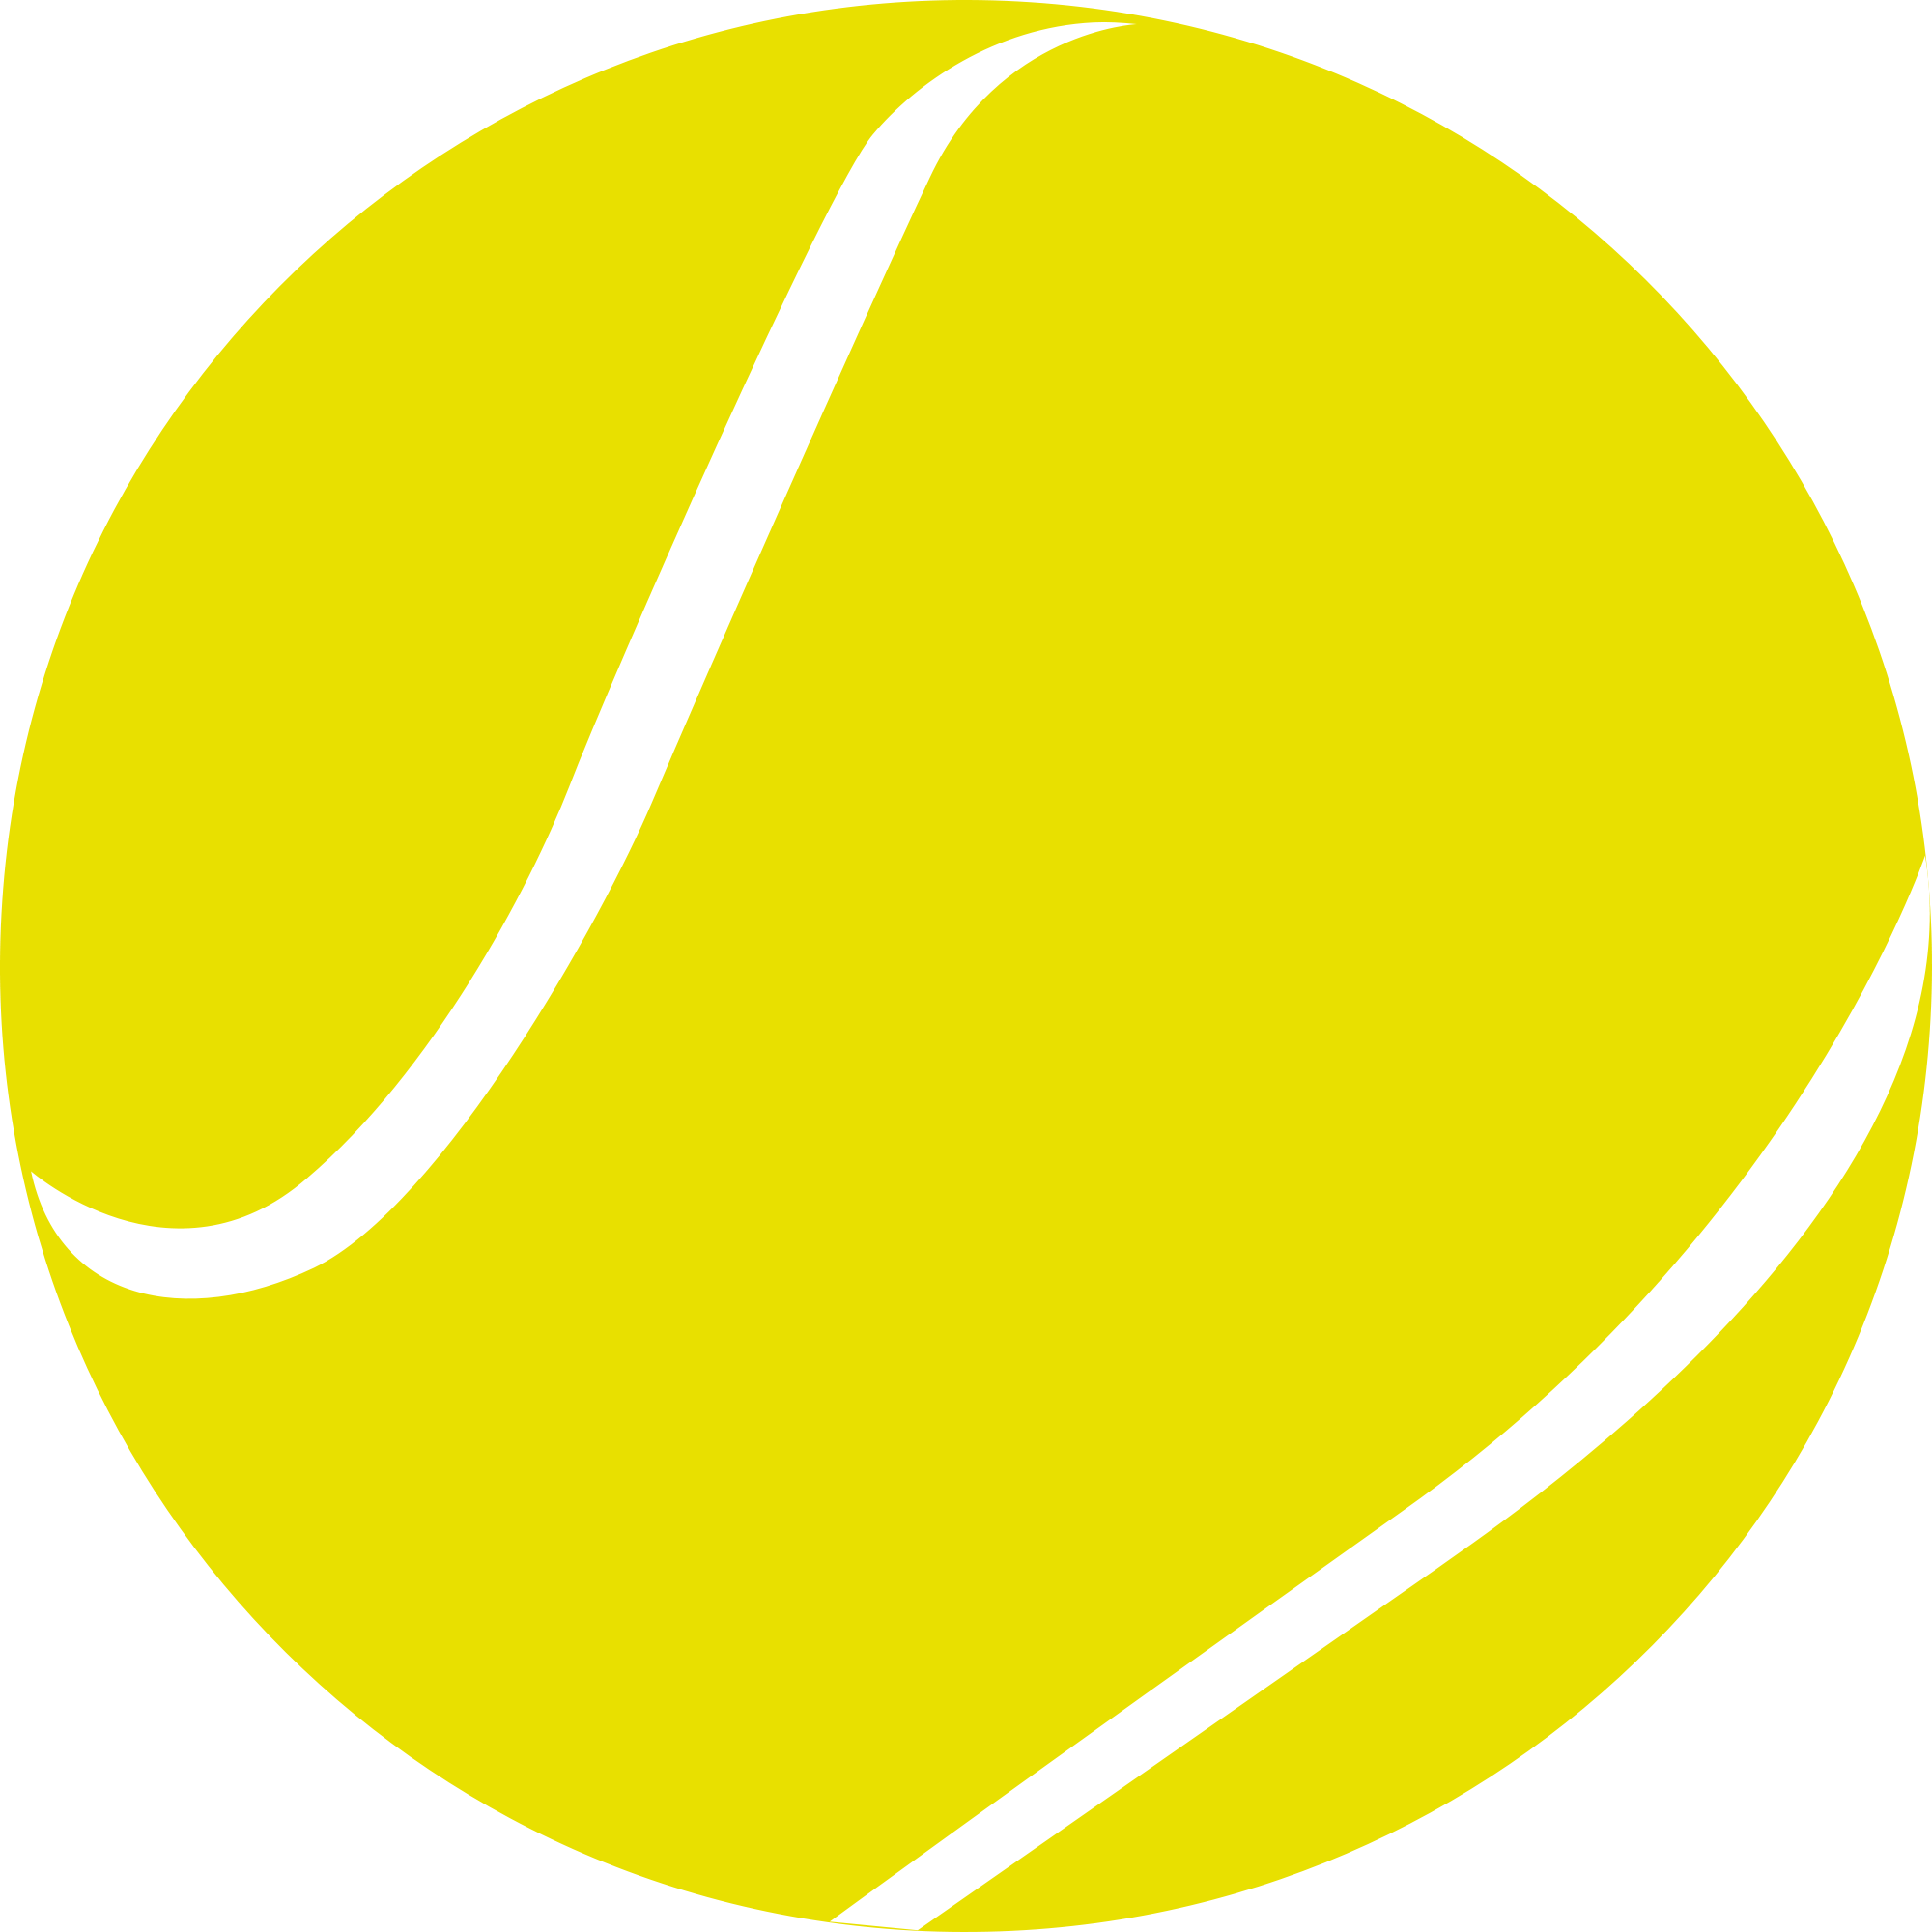 Теннисный мяч PNG изображение с прозрачным фоном